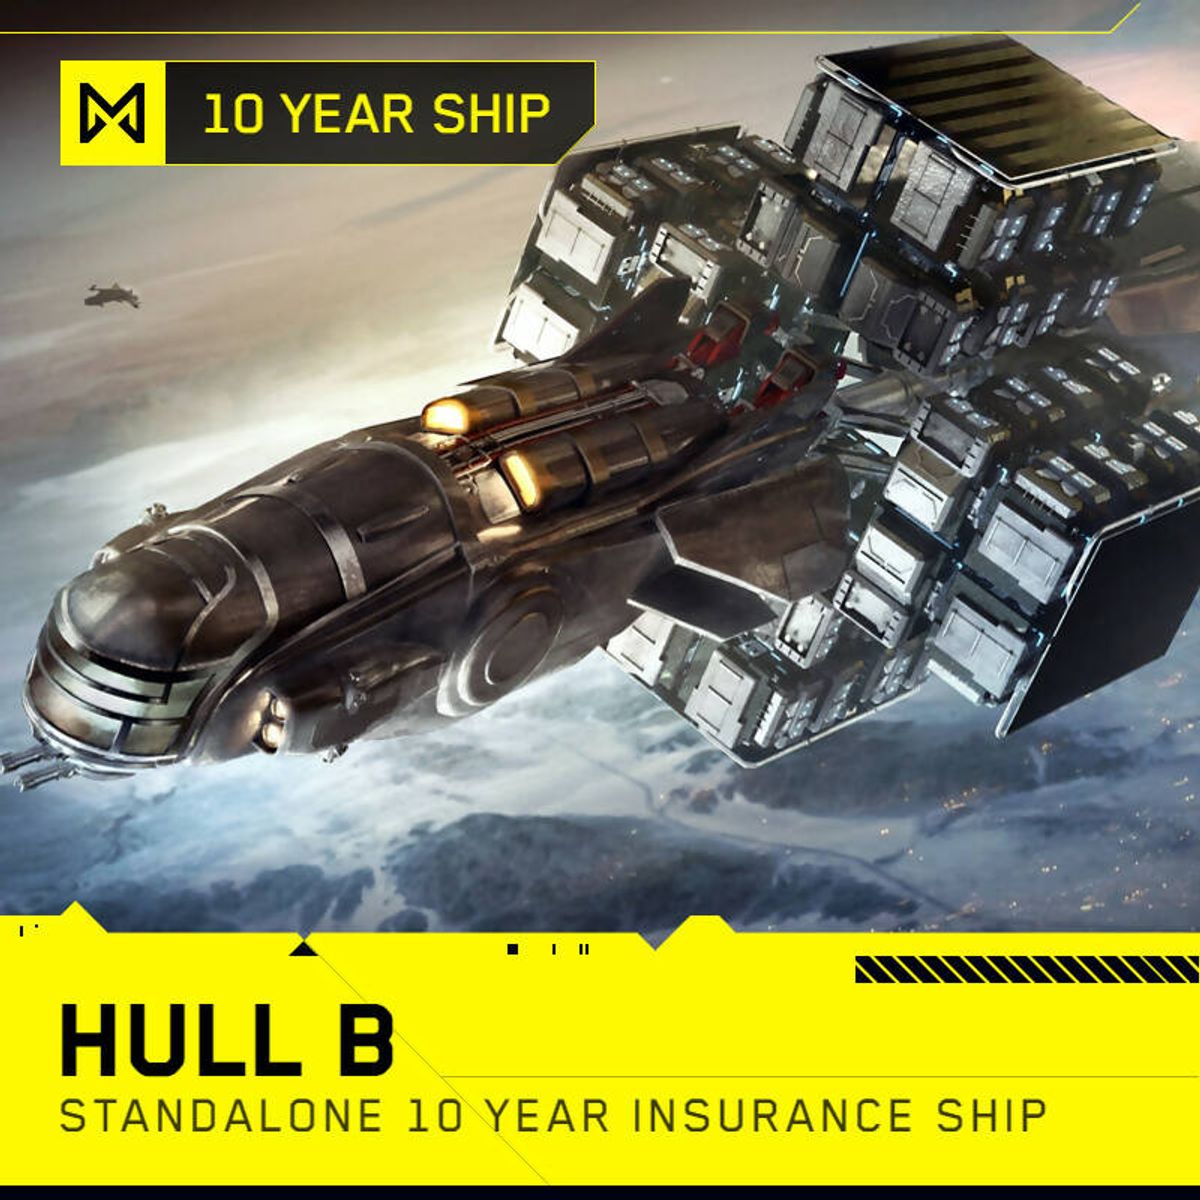 Hull B - 10 Year